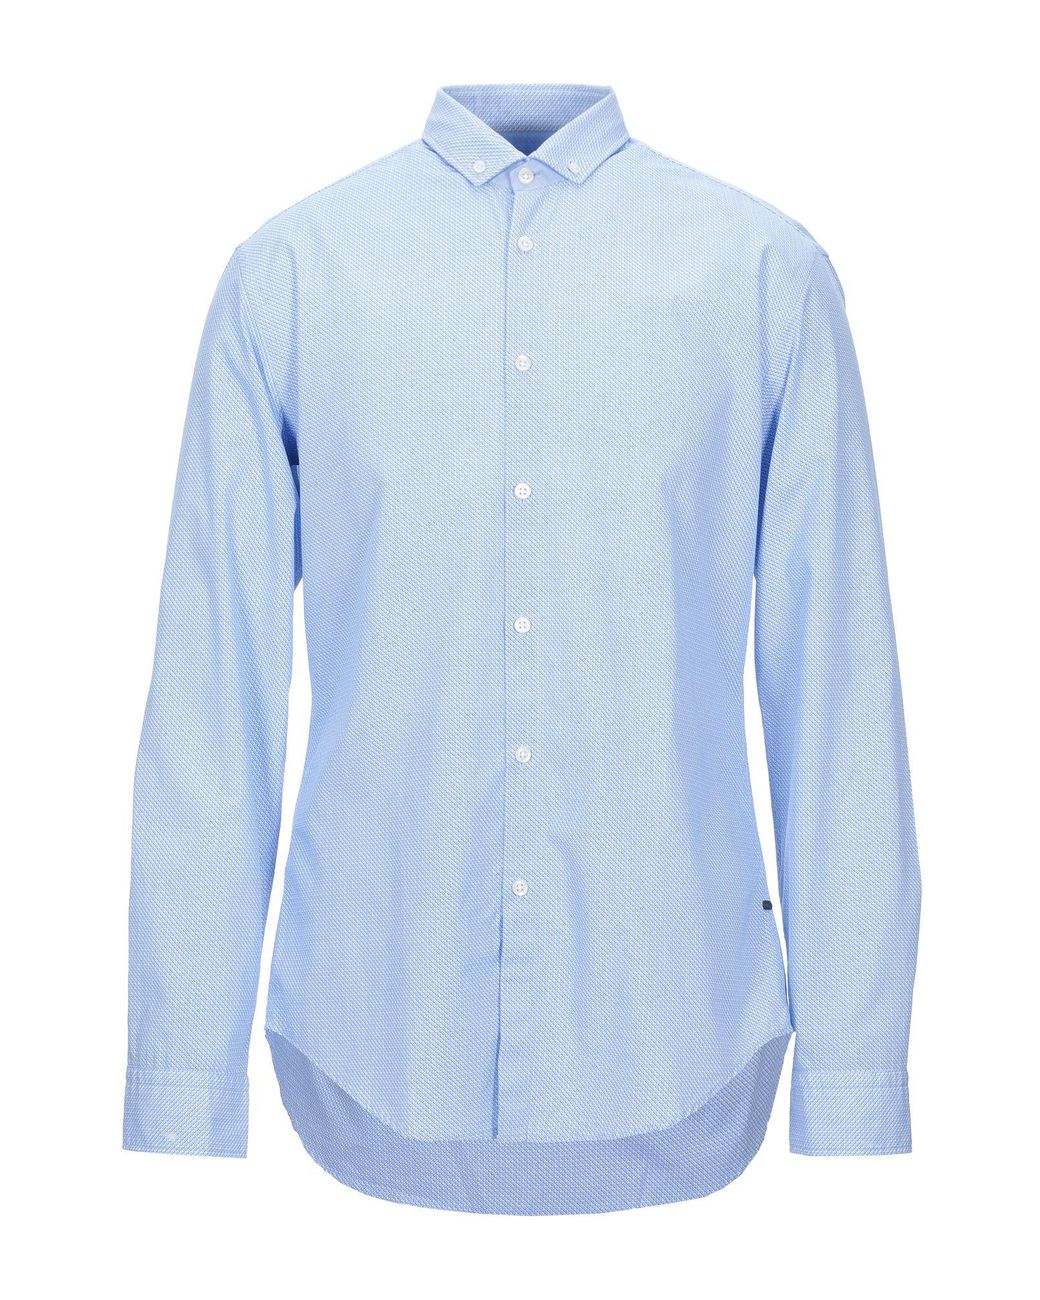 BOSS by Hugo Boss Shirt in Sky Blue (Blue) for Men - Lyst